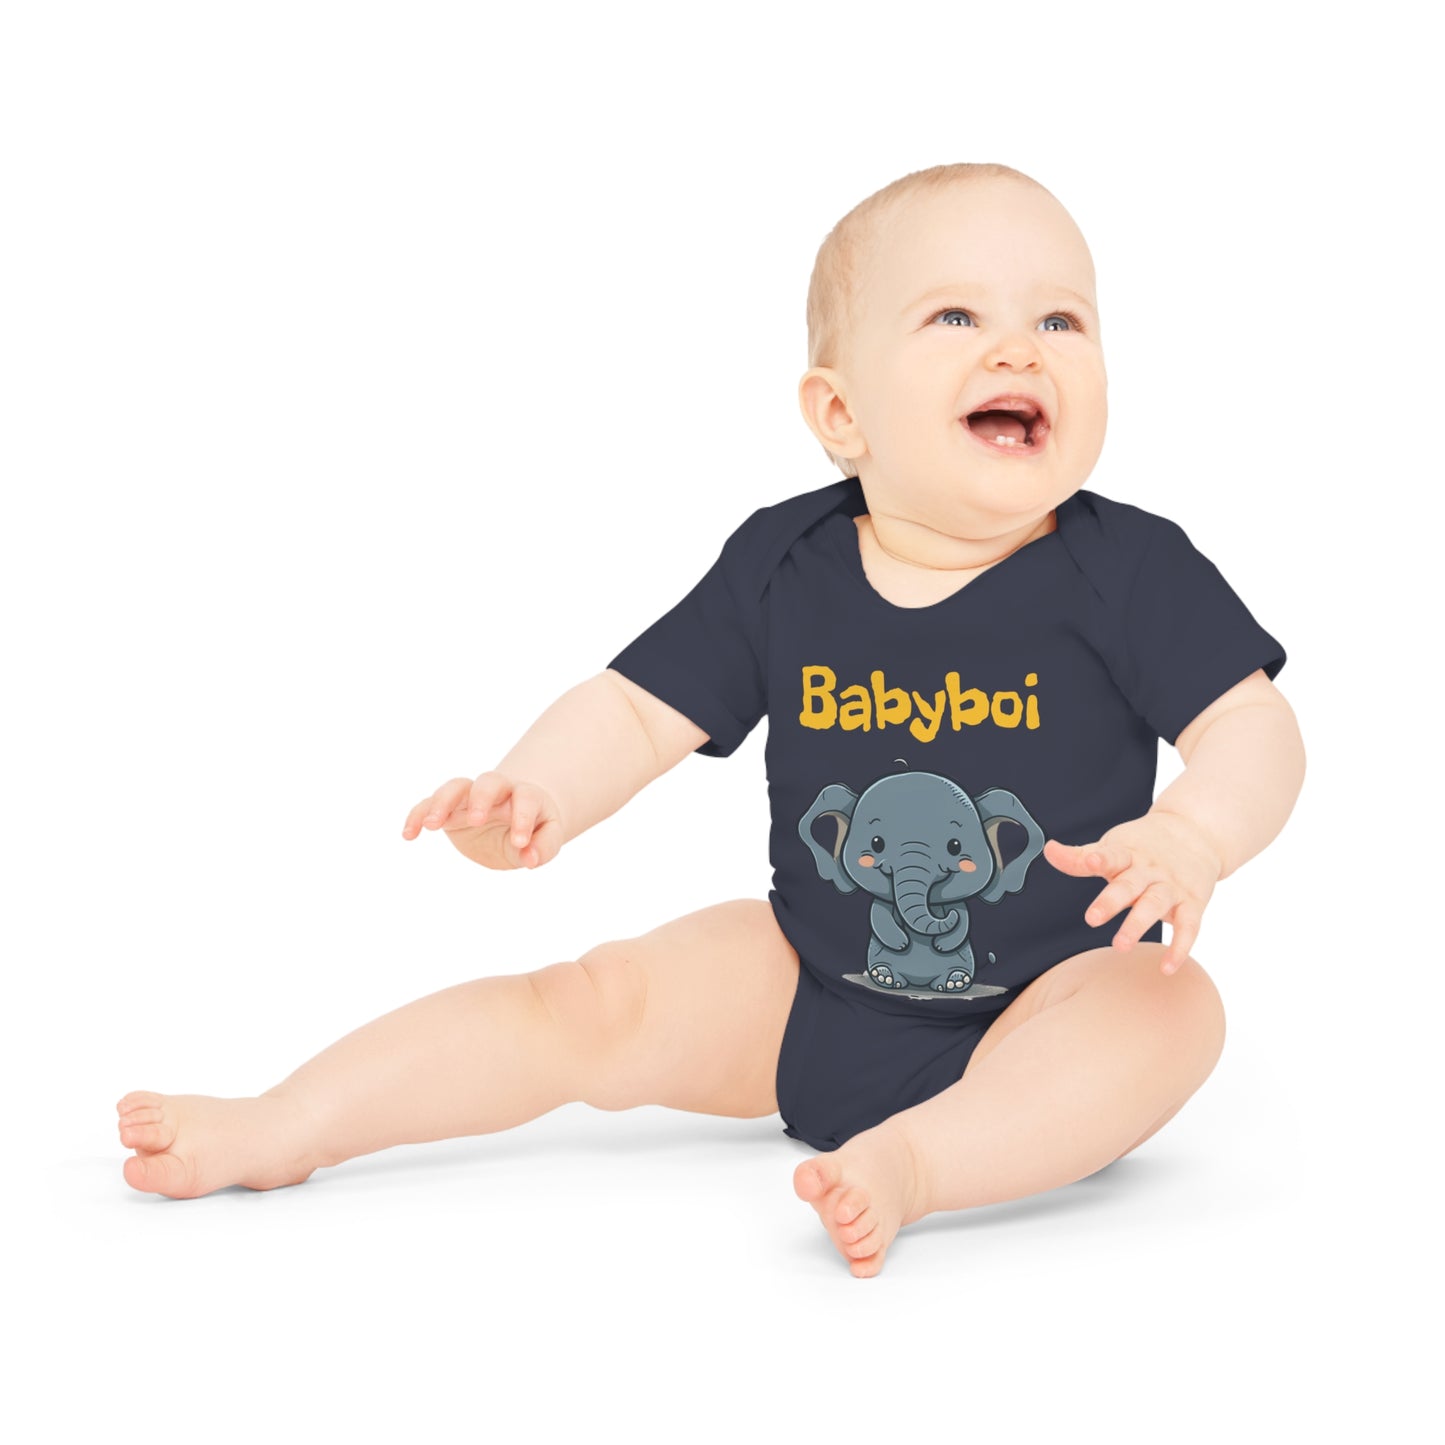 Supersüßer Babybody "Babyboi" | Onesie | Babybodie | Geschenkidee | BioBaumwolle